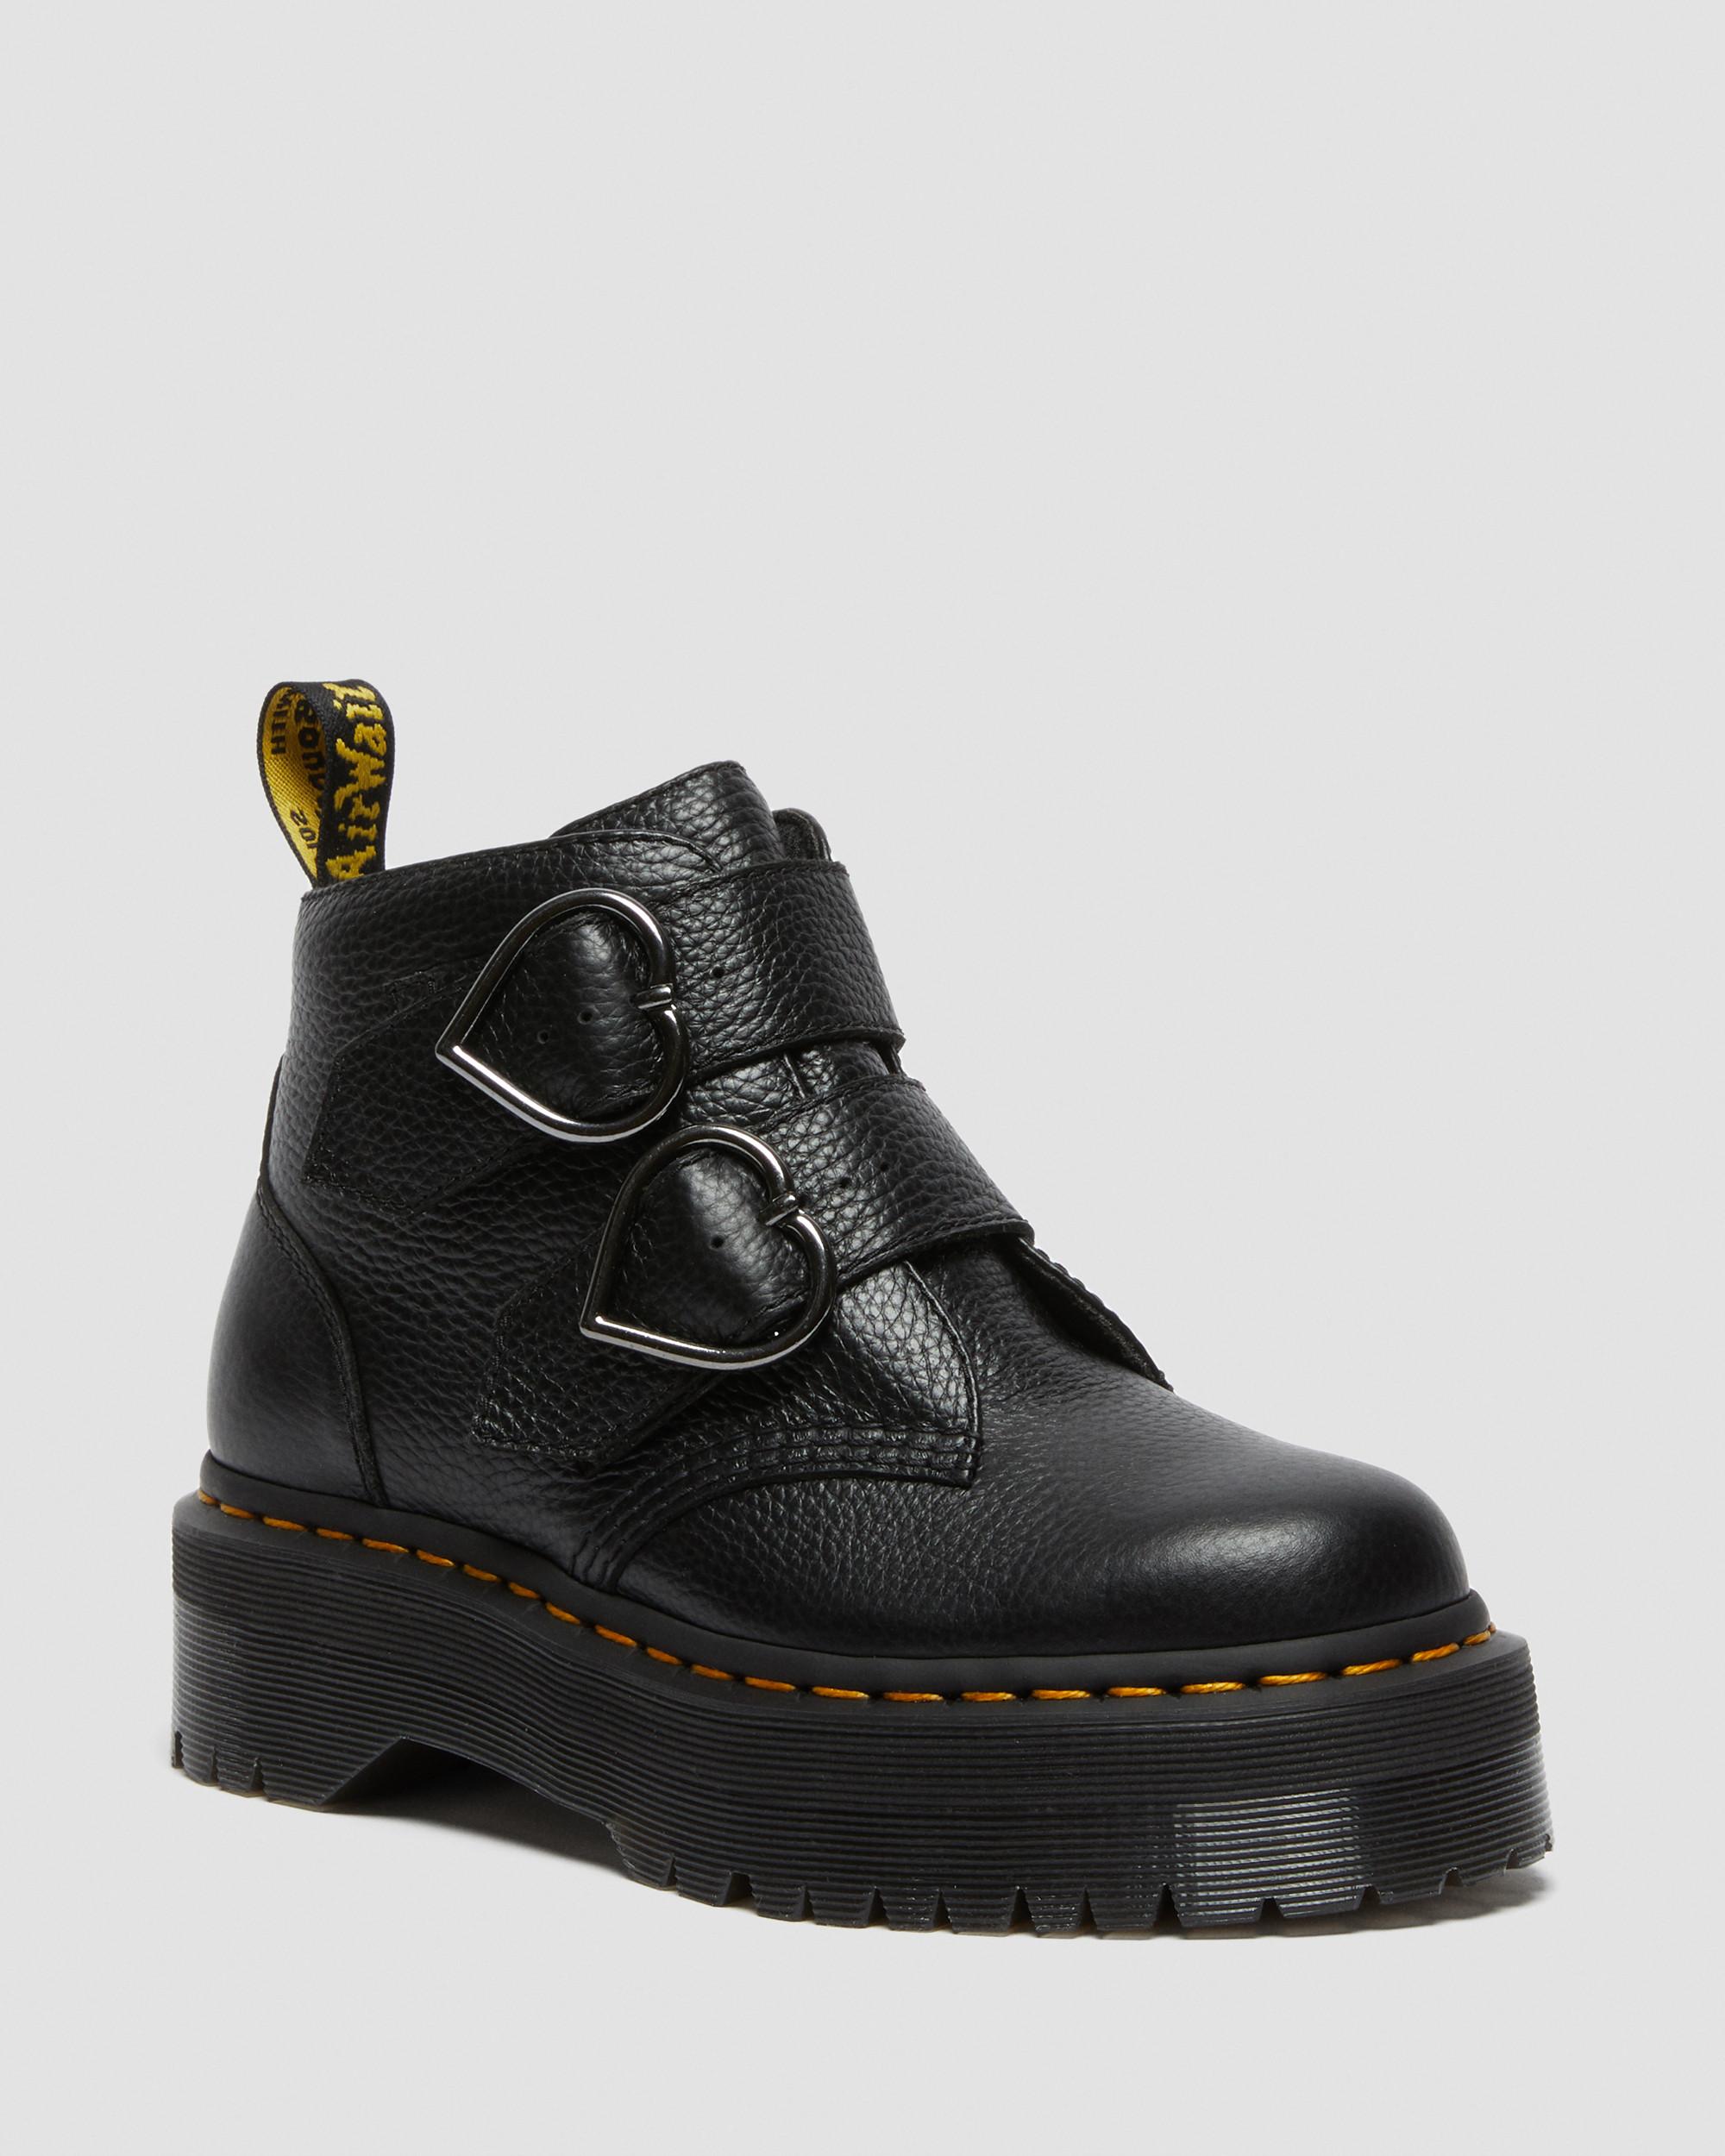 Devon Heart Leather Platform Boots, Black | Dr. Martens